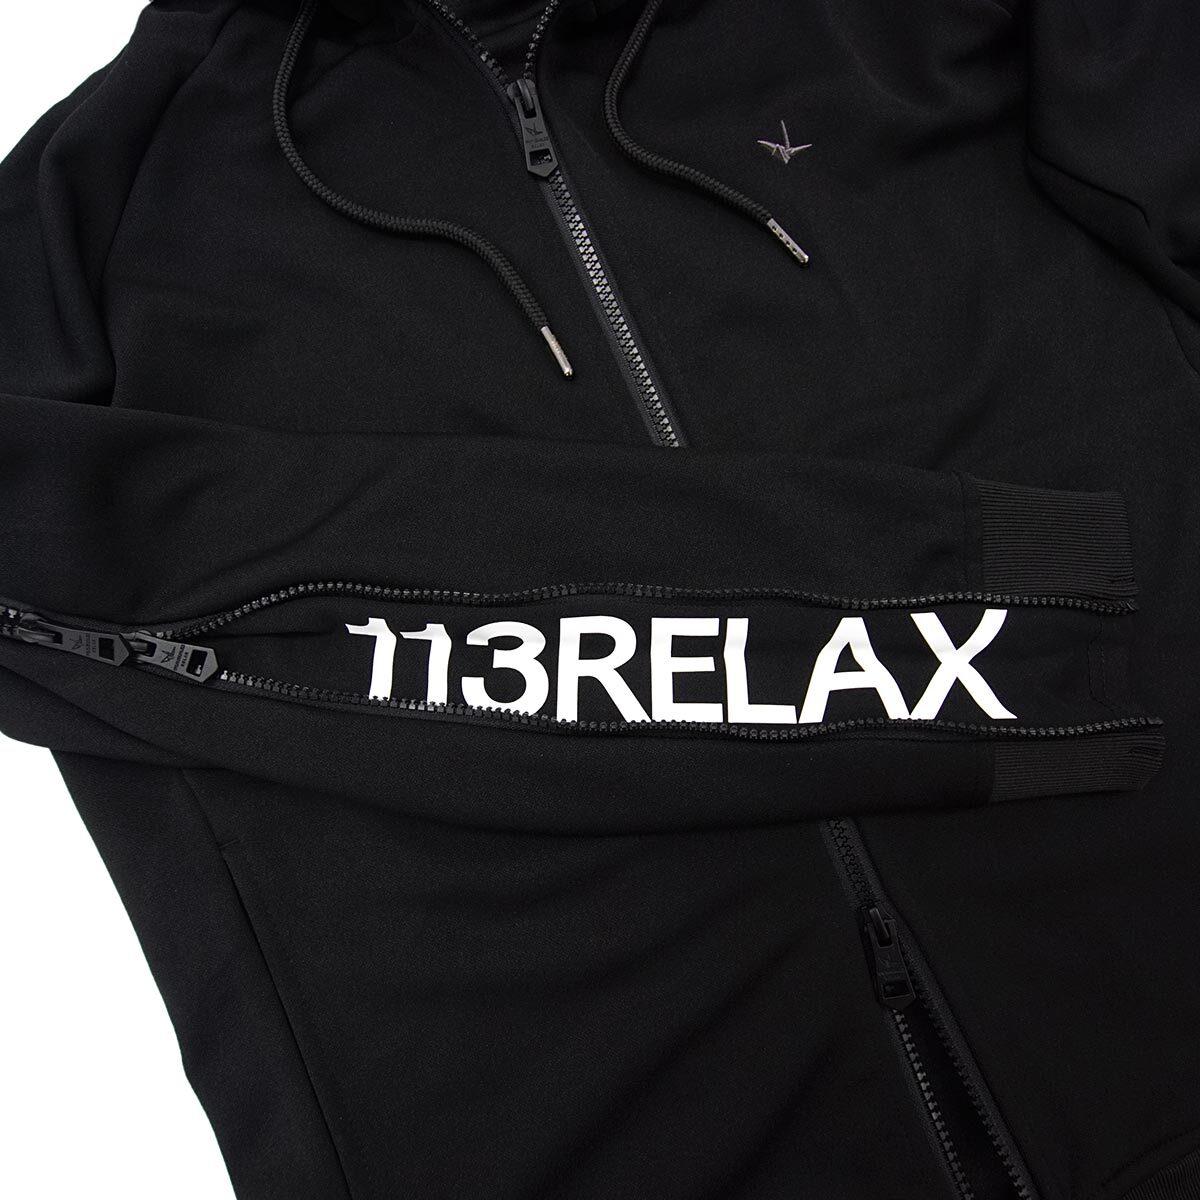 [新品]1PIU1UGUALE3 RELAX【L】ジップロゴ ジャージーパーカー ジャケット 袖に隠しロゴ 伸縮豊かなジャージ ウノピゥウノウグァーレトレ_画像4